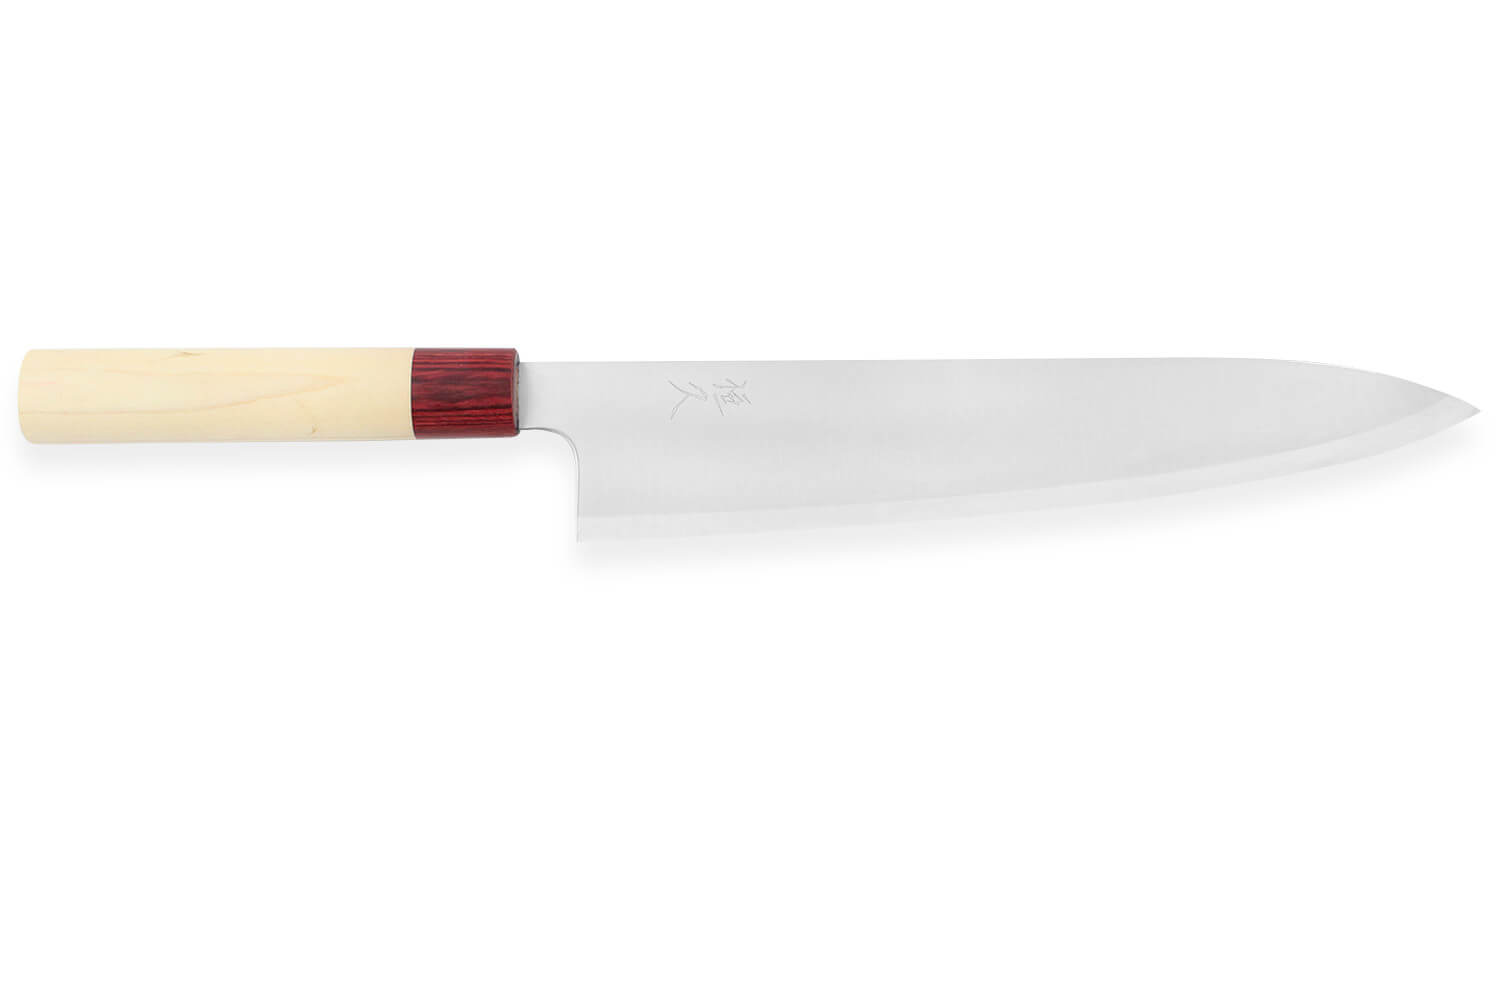 Couteau cuisine japonais Global chef 27cm